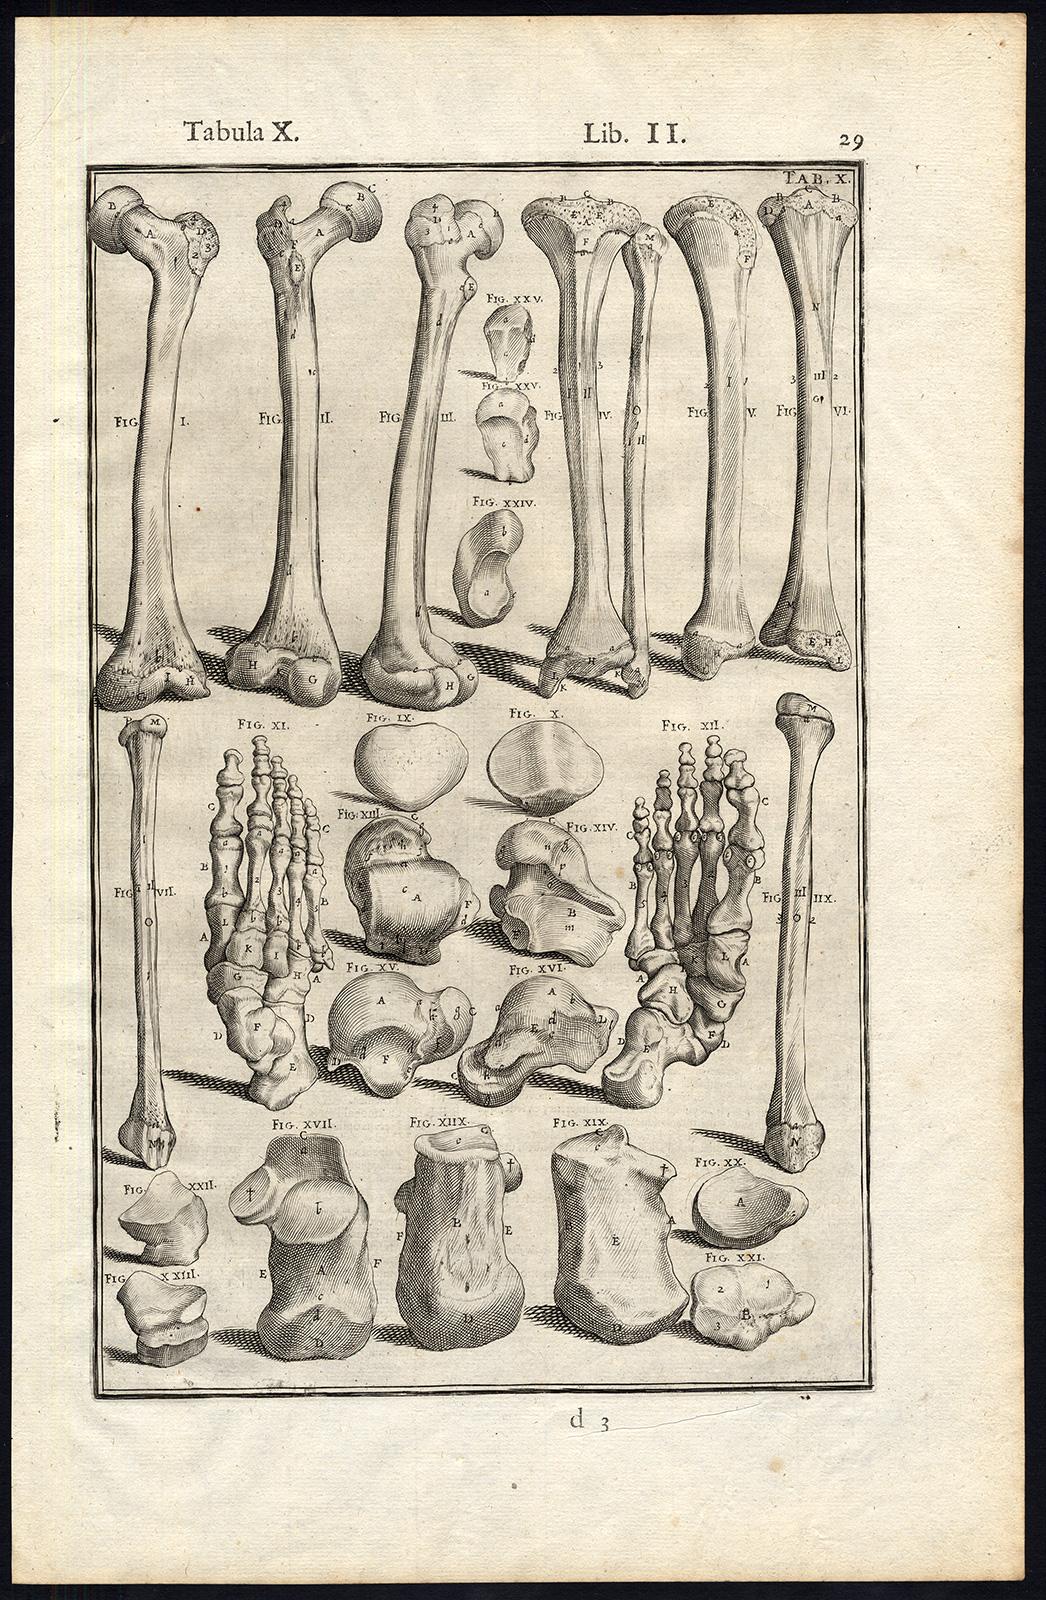 Anatomical print - bones of legs, feet, etc. - by Spigelius - Engraving - 17th c - Print by Adrianus Spigelius